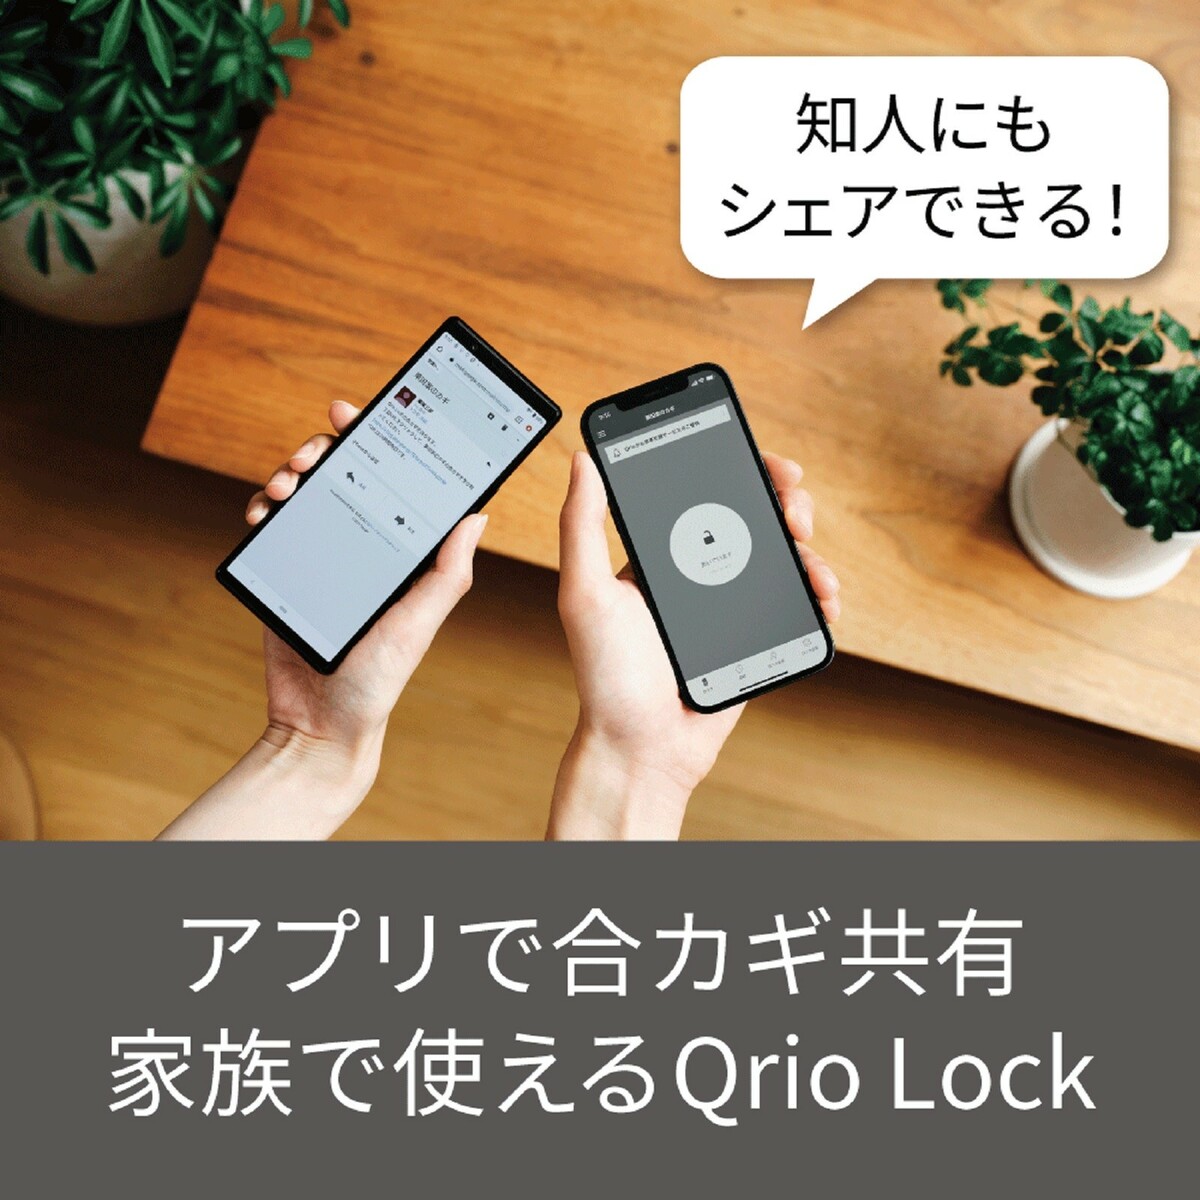 国内発送 2点セット Qrio Lock ブラック Hub キュリオロック キュリオハブ スマートロック オートロック ハンズフリー スマートホーム  リモート 鍵 自動 玄関 ドア 後付け 防犯 送料無料 Q-SL2 Q-H1 fucoa.cl